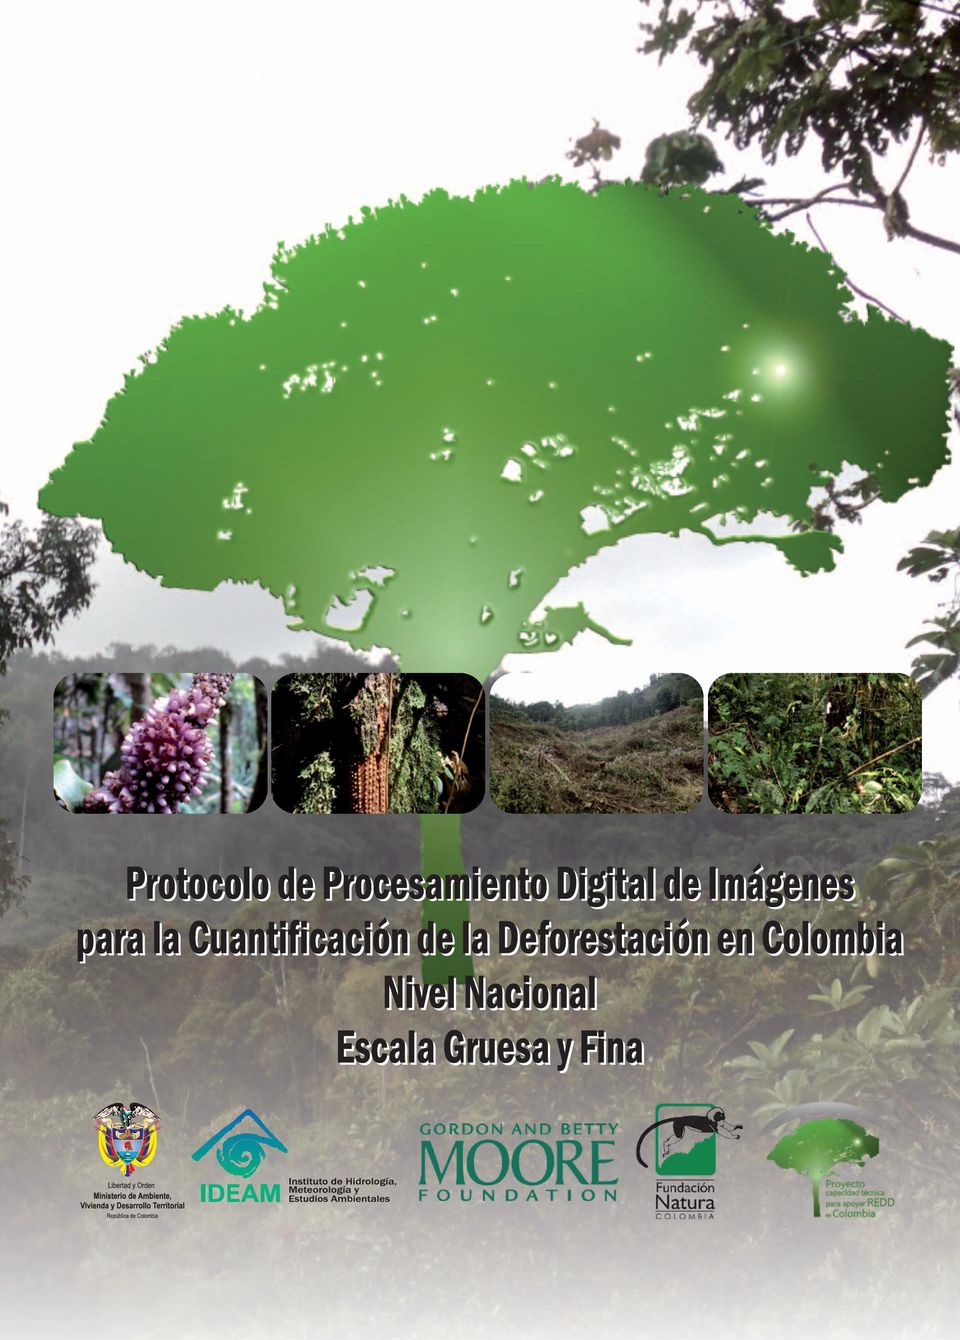 de la Deforestación en Colombia